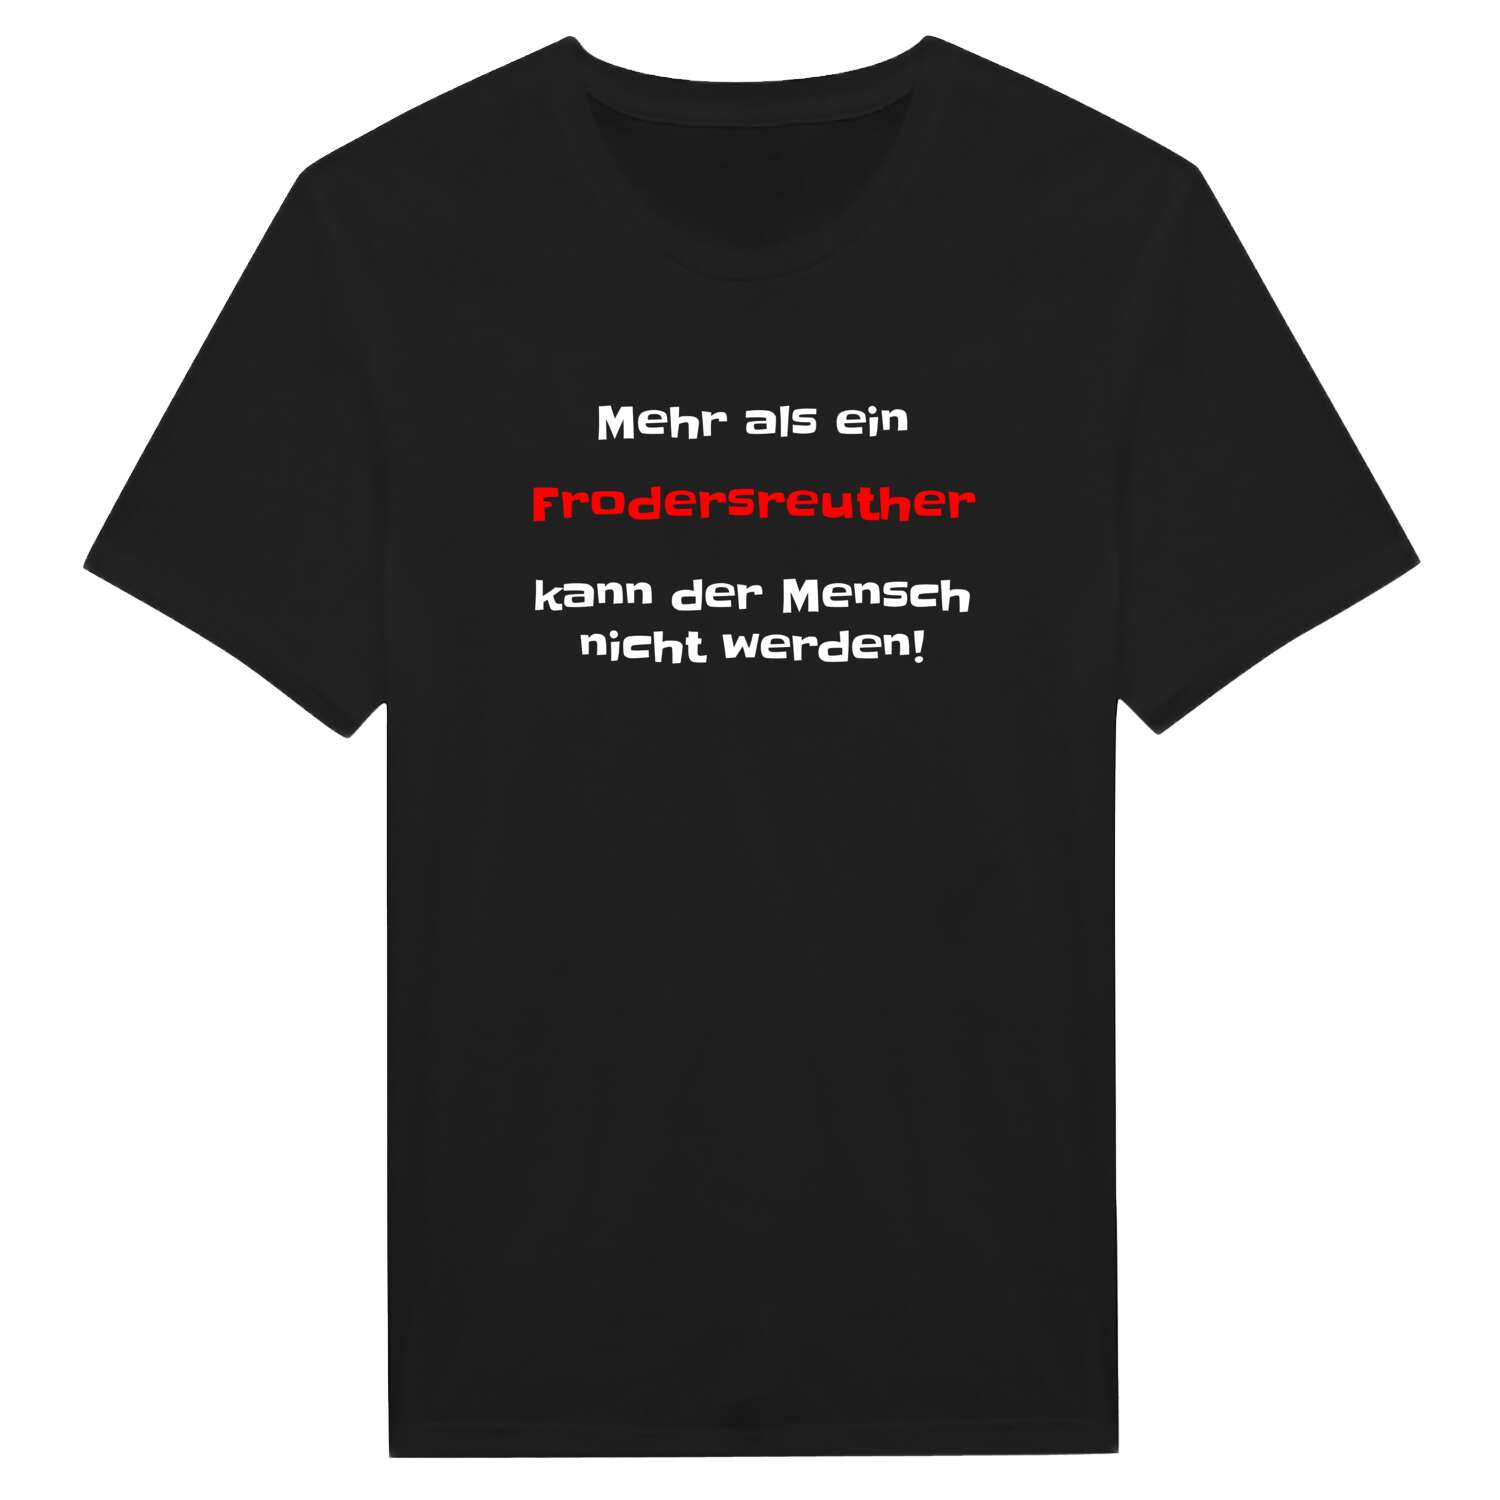 Frodersreuth T-Shirt »Mehr als ein«